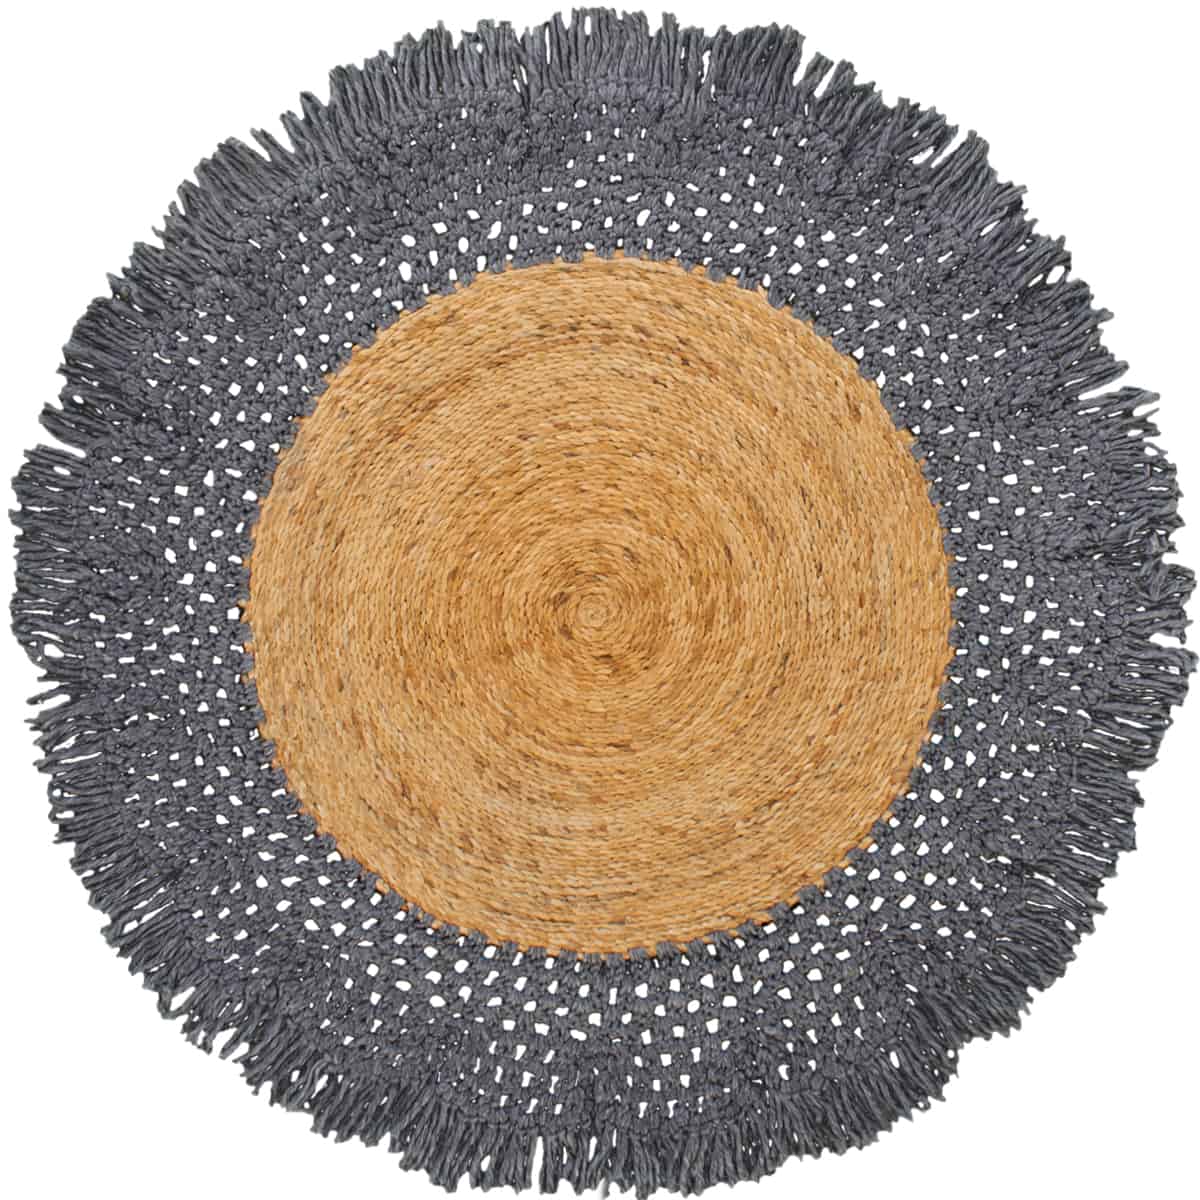 שטיח תמר מעצבים 13 אפור כהה/בז' עגול עם פרנזים | השטיח האדום